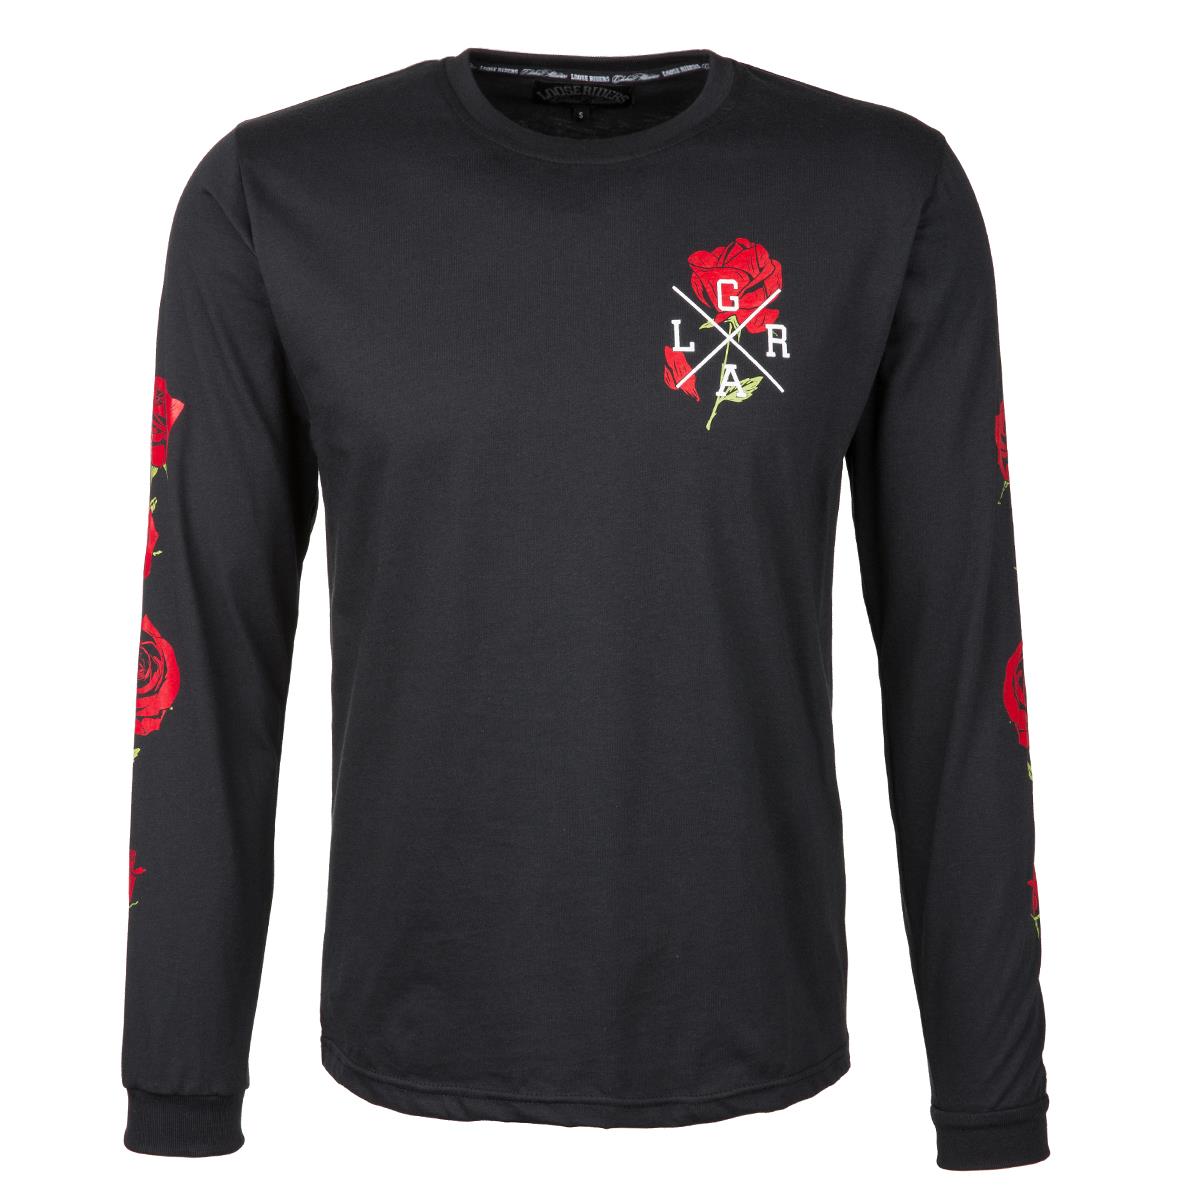 Loose Riders Sweatshirt Roses Black/Red